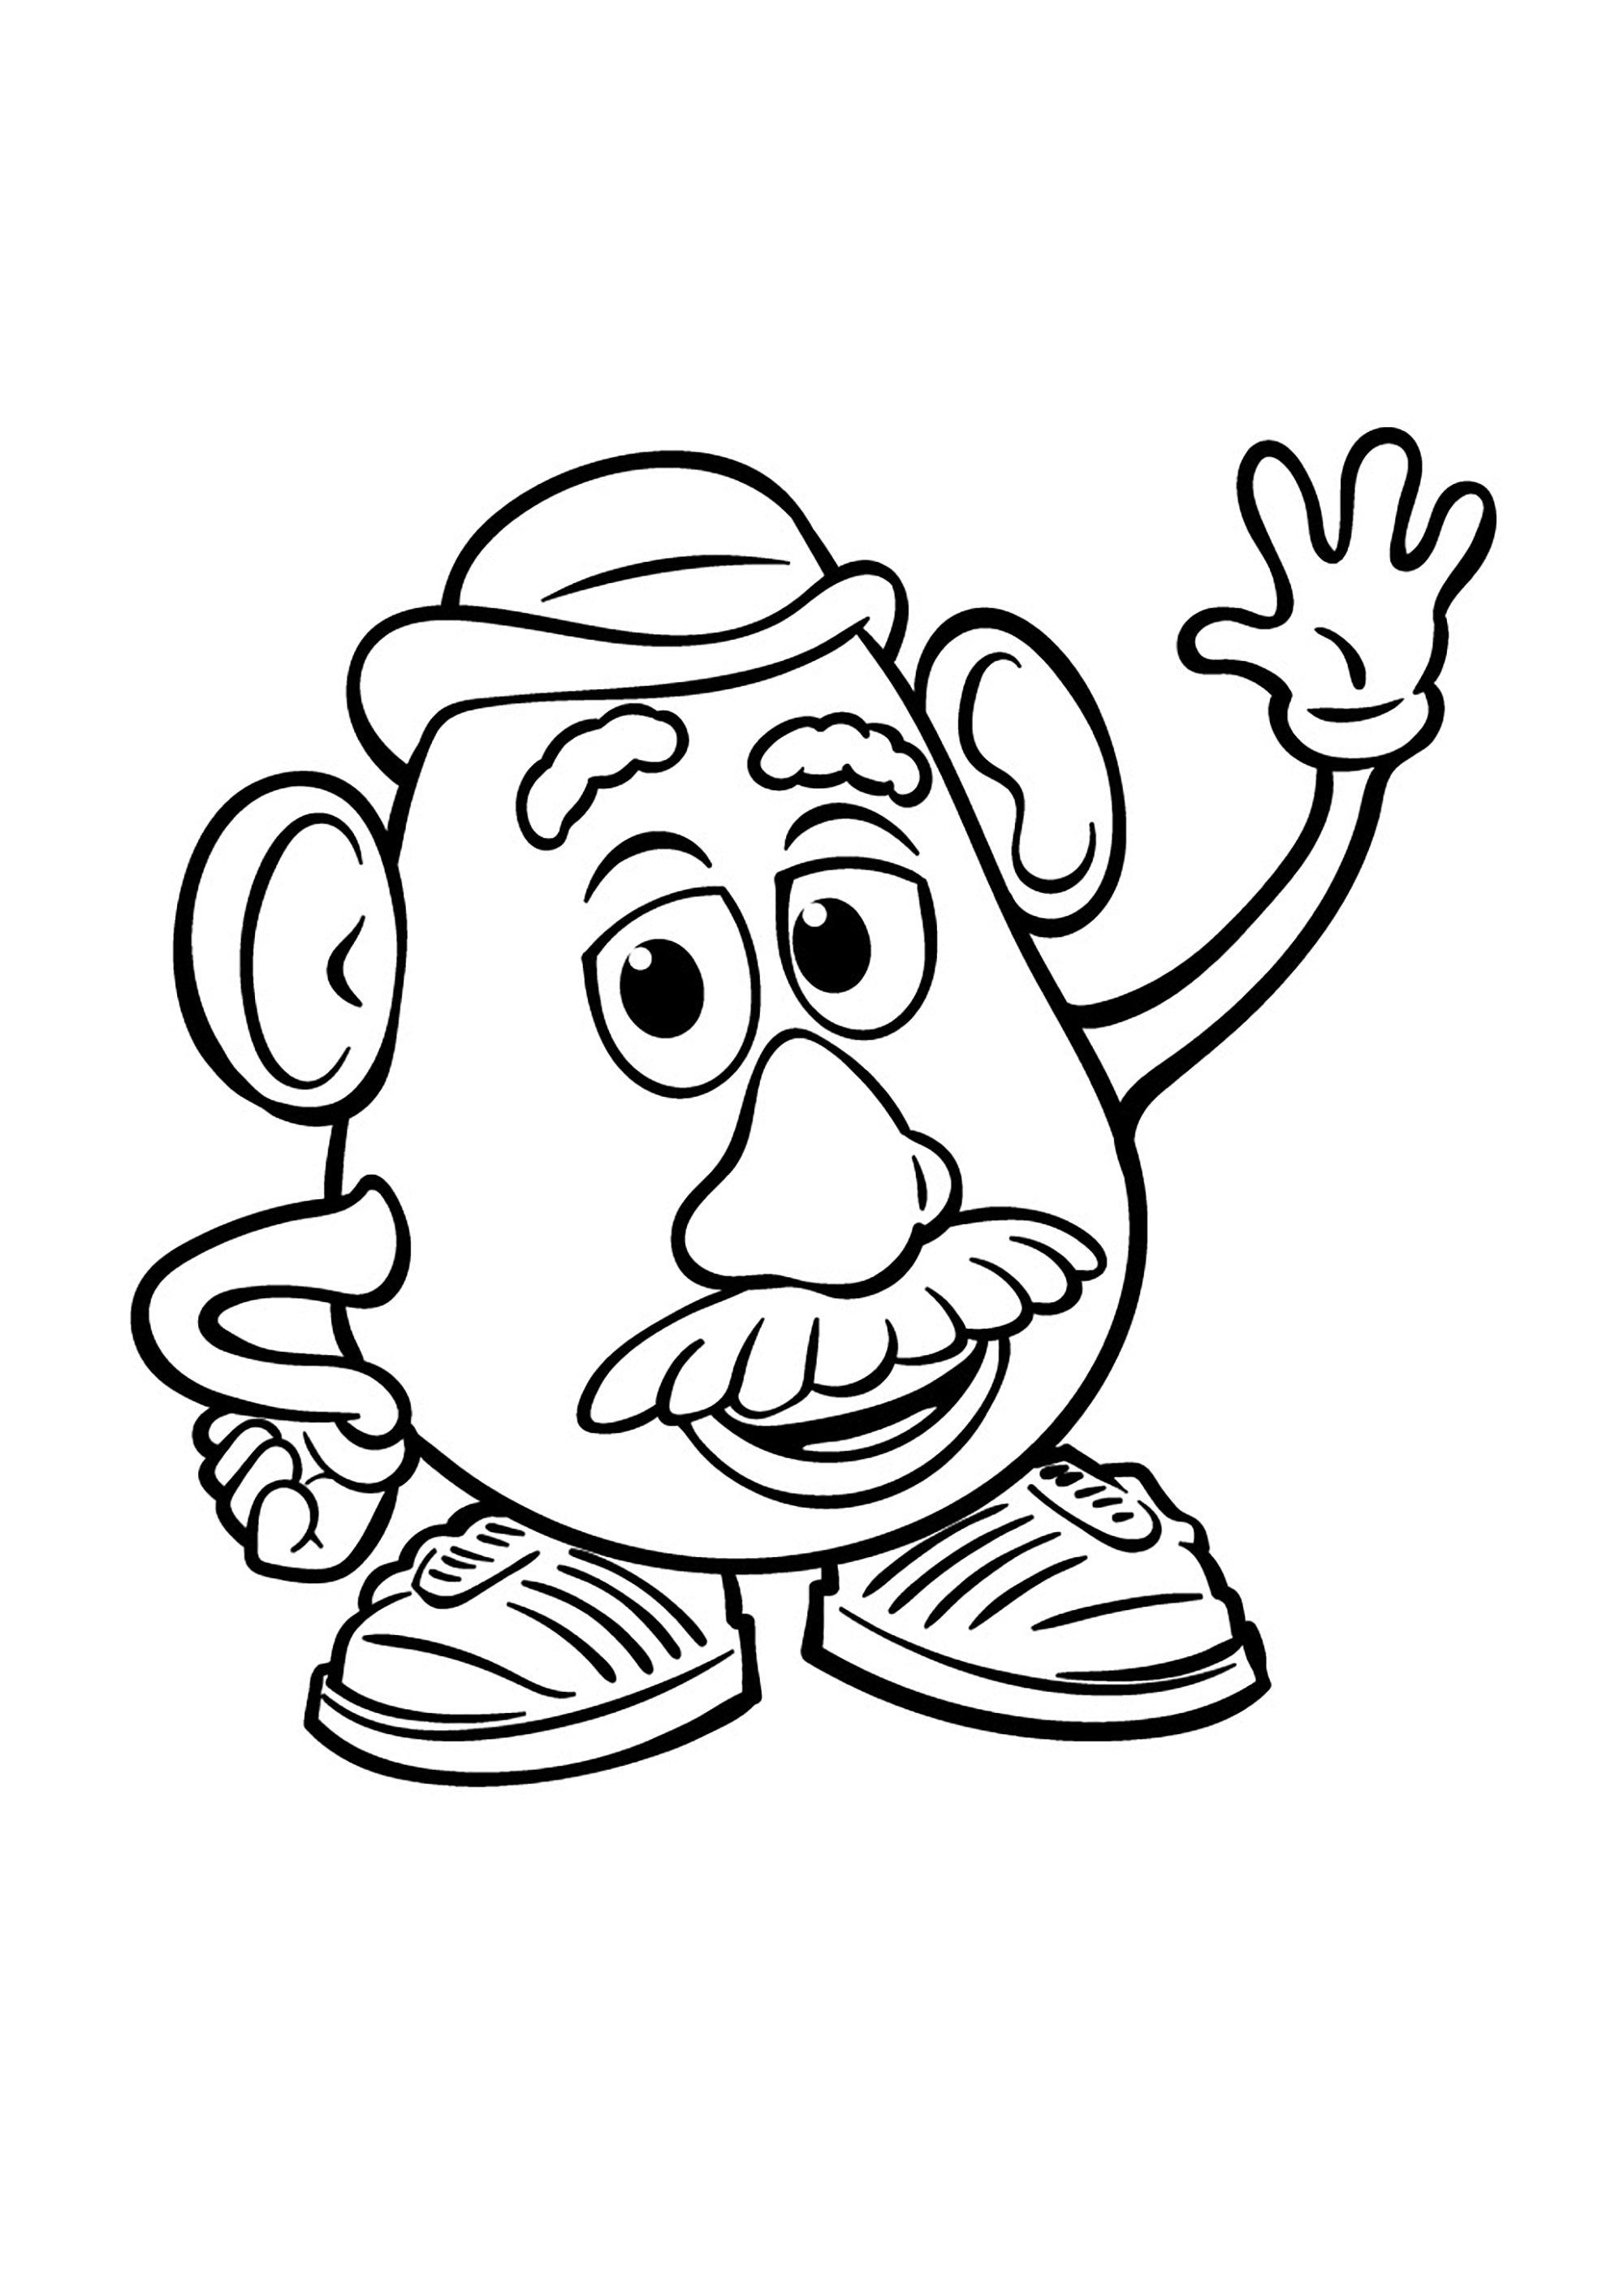 Monsieur Patate un des jouets d'Andy dans Toy Story. Monsieur Patate a été inventé en 1949. L'objectif de son créateur (George Lerner) était simple : faire aimer les légumes aux enfants. Pour ce faire, il crée un ensemble de 28 pièces en plastique (nez, bras, jambes ...) qui seront distribuées initialement dans les boîtes de céréales, à l'origine sans le corps en forme de patate.